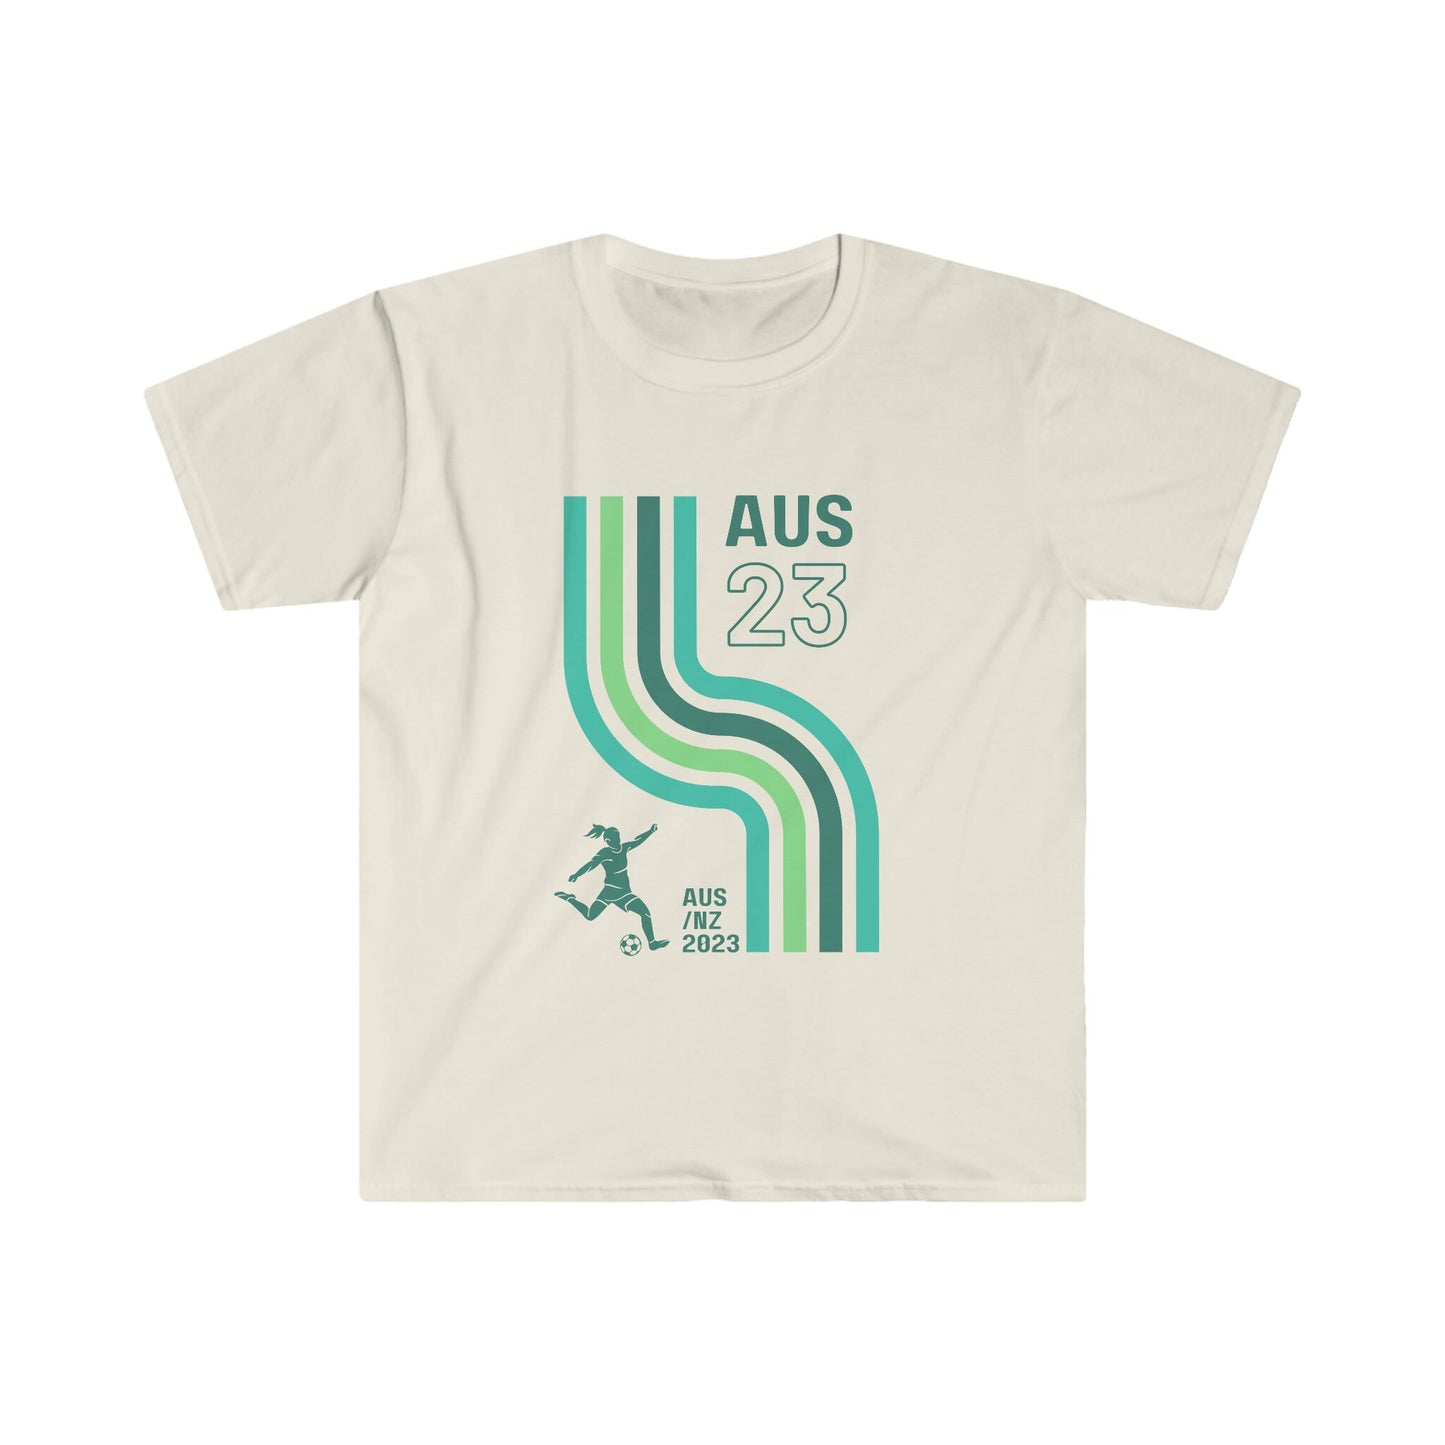 Australian Women's World Cup Blue Supporter T-Shirt, Away Kit design, Retro Print, Matilda's Soccer, Aussie Women's football, Women's FIFA